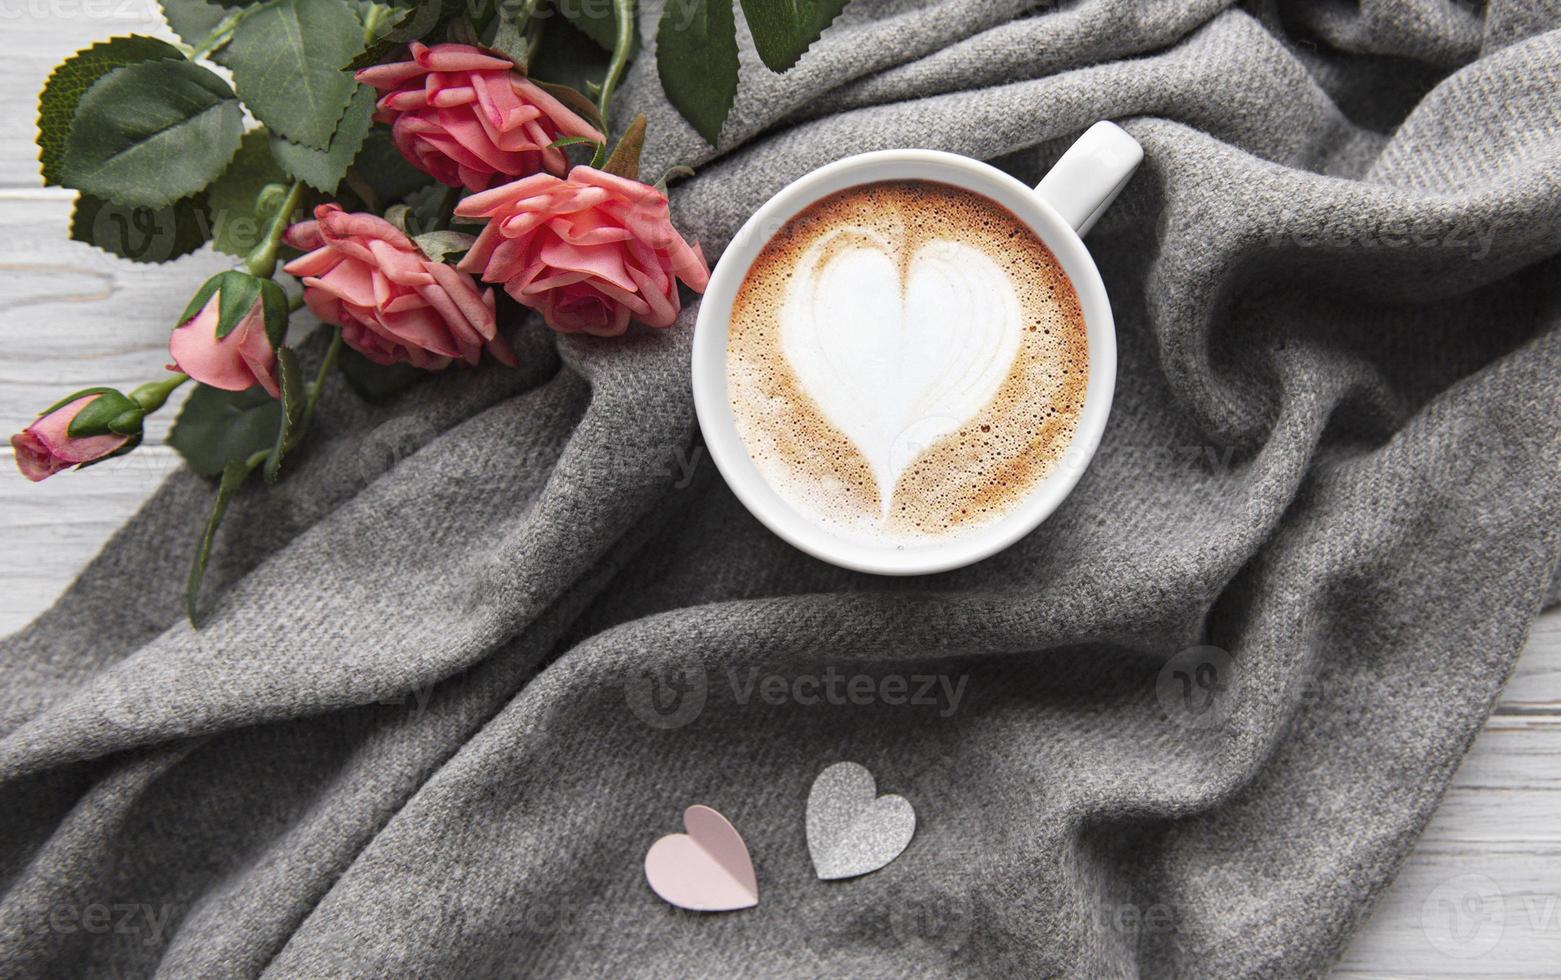 een kopje koffie met hartpatroon foto